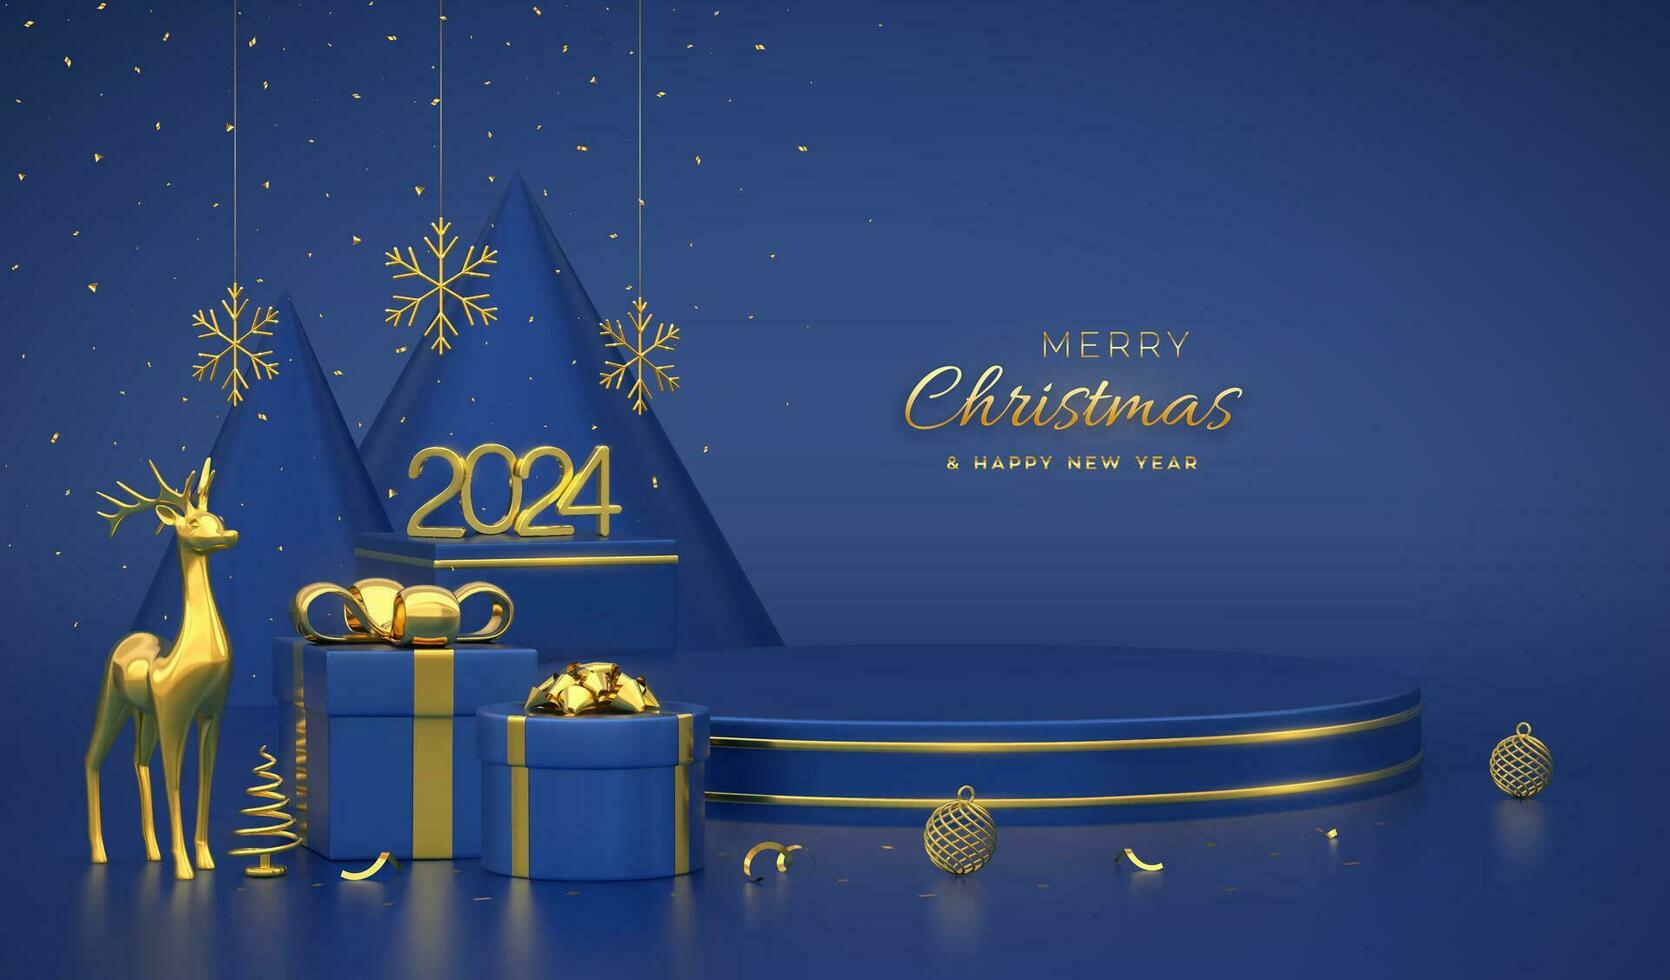 Weihnachten Szene und 3d runden Plattformen auf Blau Hintergrund. 3d golden Zahlen 2024. leer Sockel mit Reh, leuchtenden Schneeflocken, Bälle, Geschenk Kisten, Gold metallisch Kegel gestalten Kiefer, Fichte Bäume. Vektor. vektor